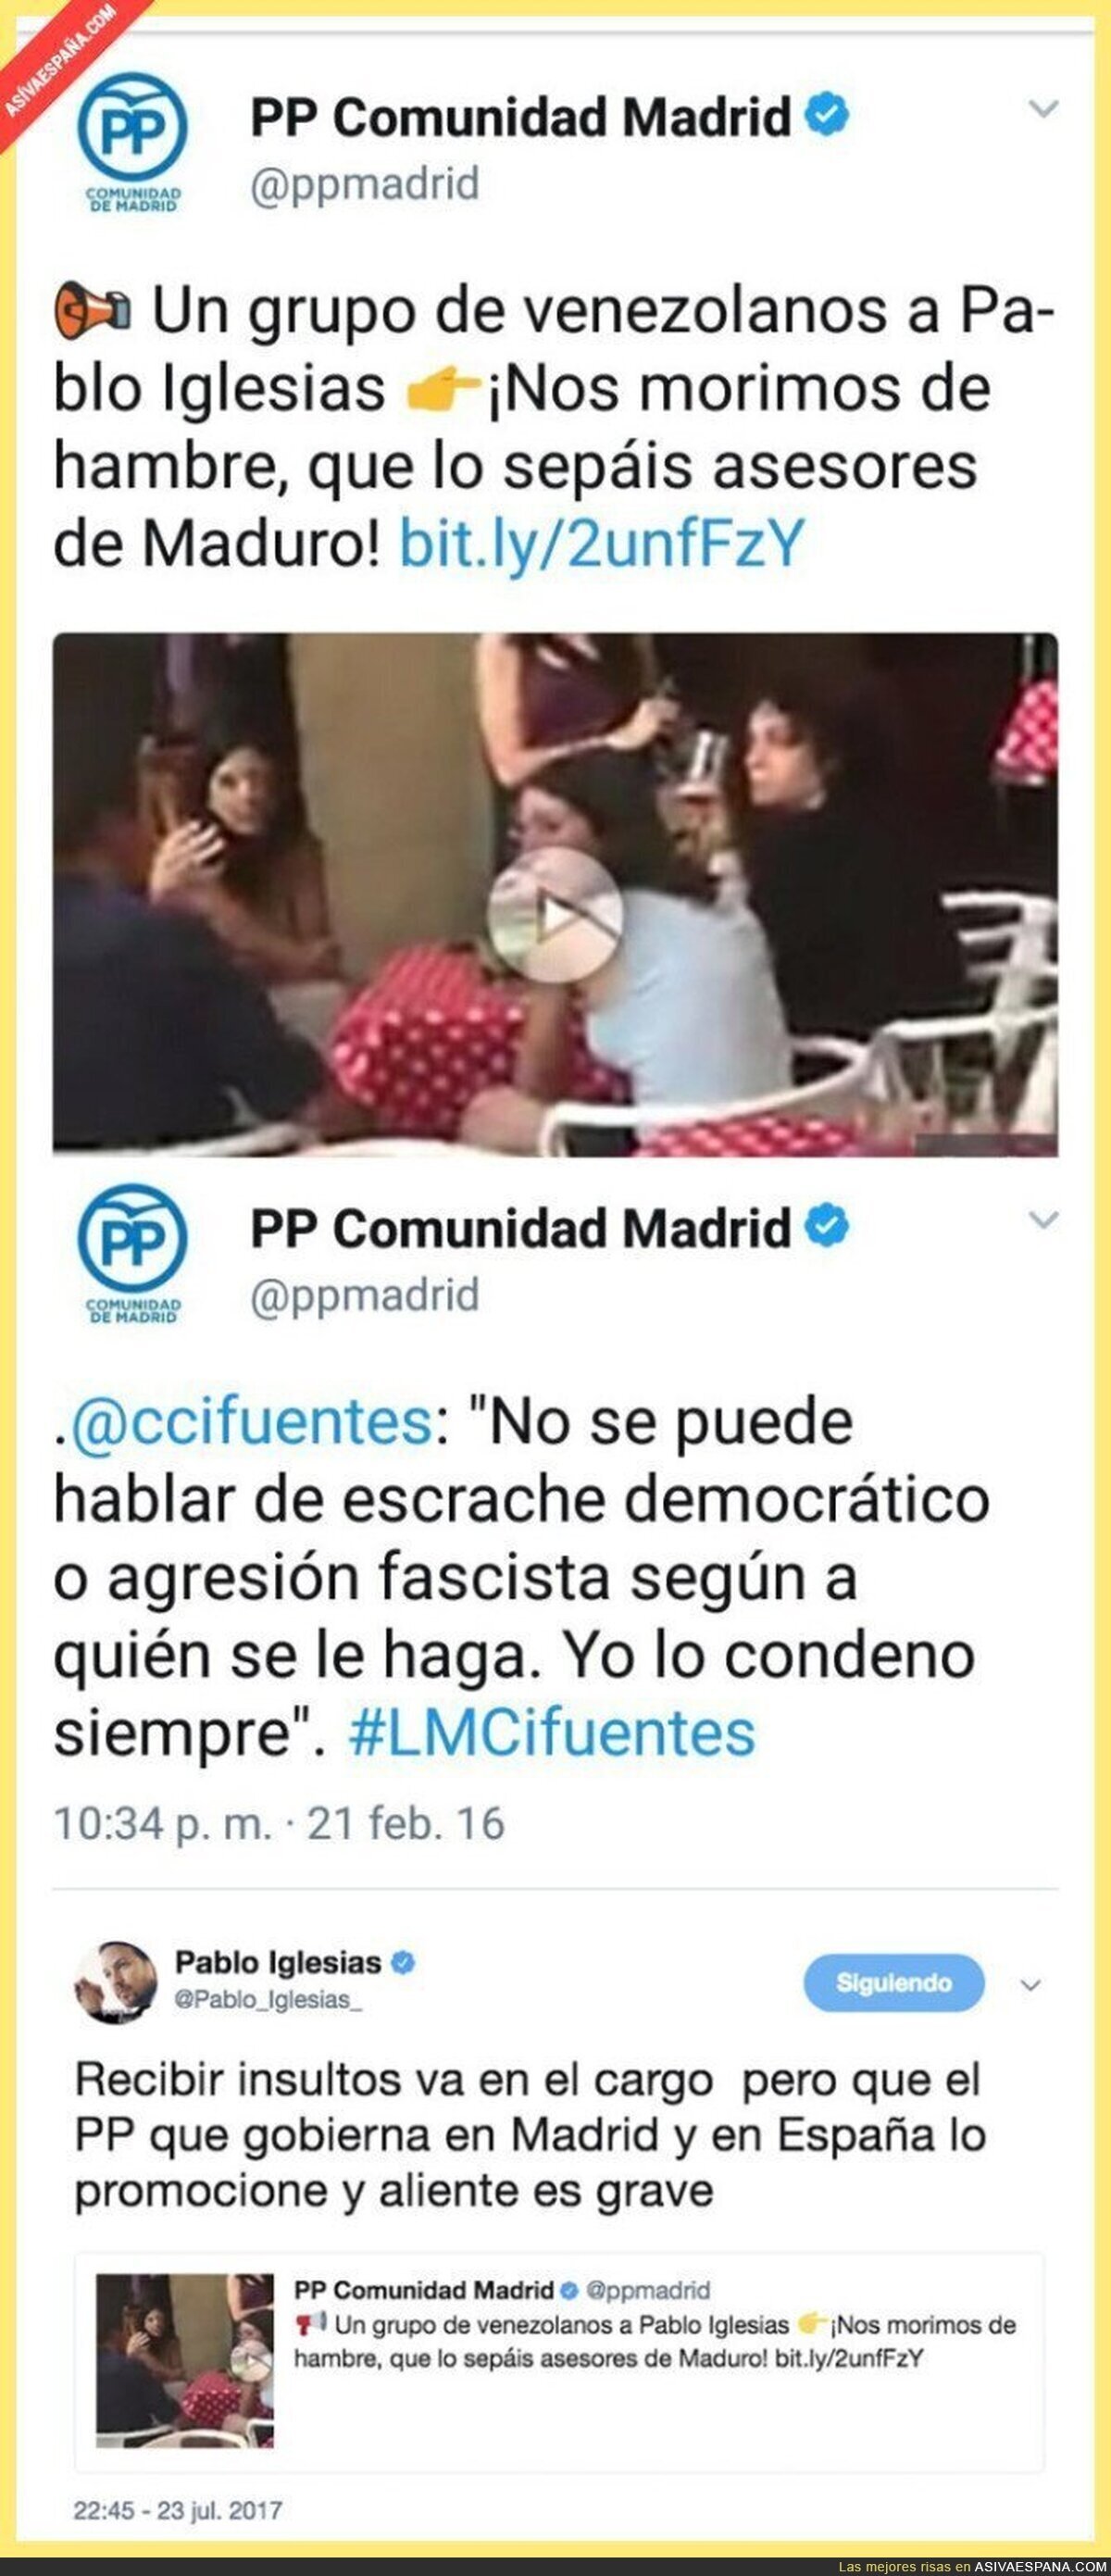 El PP de Madrid hace lo contrario a lo que predicaba hace meses con los escraches